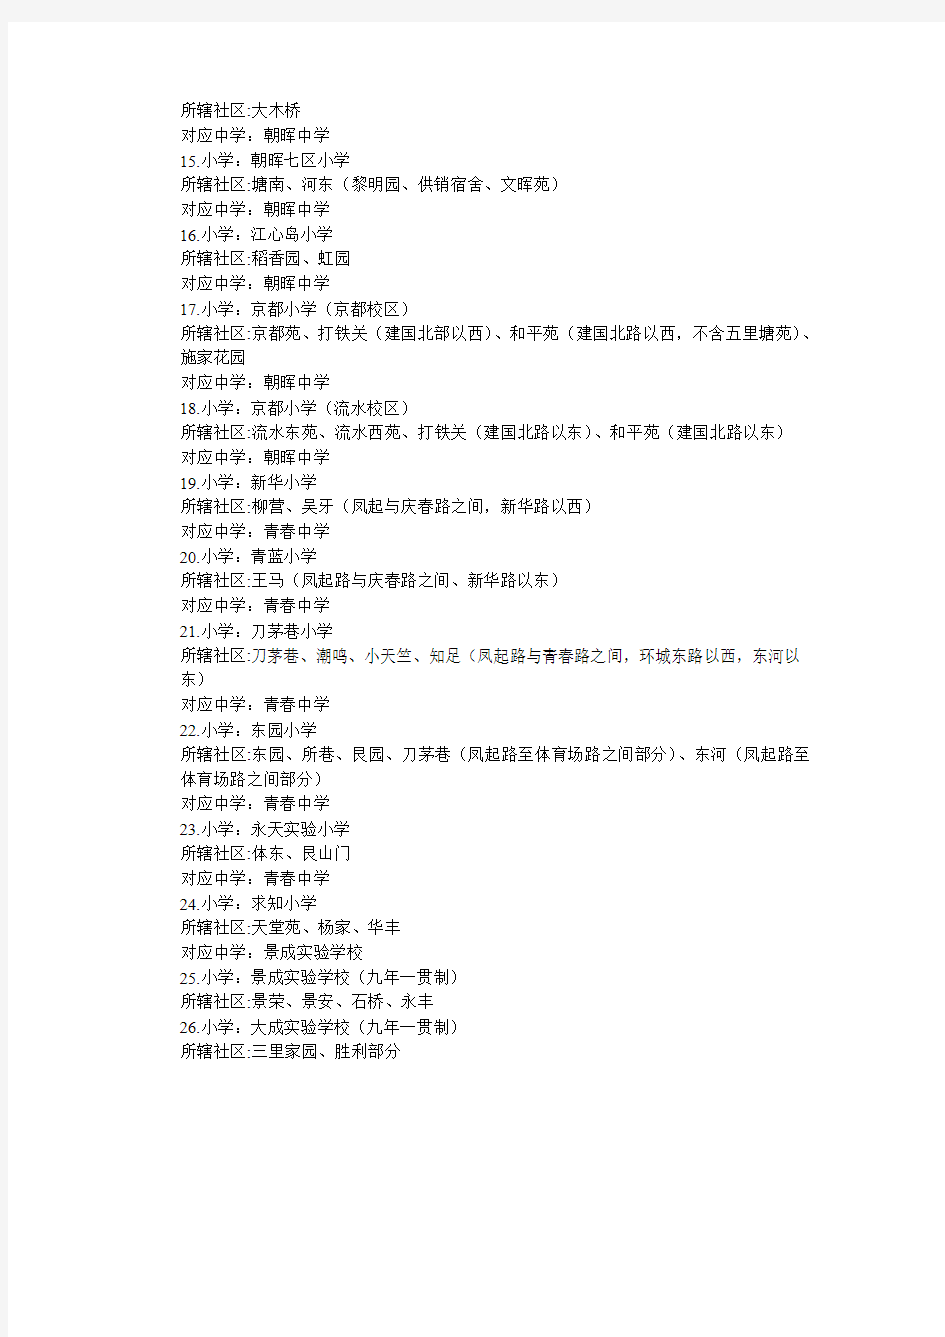 杭州市小学及九年一贯制学校教育服务区划分一览表